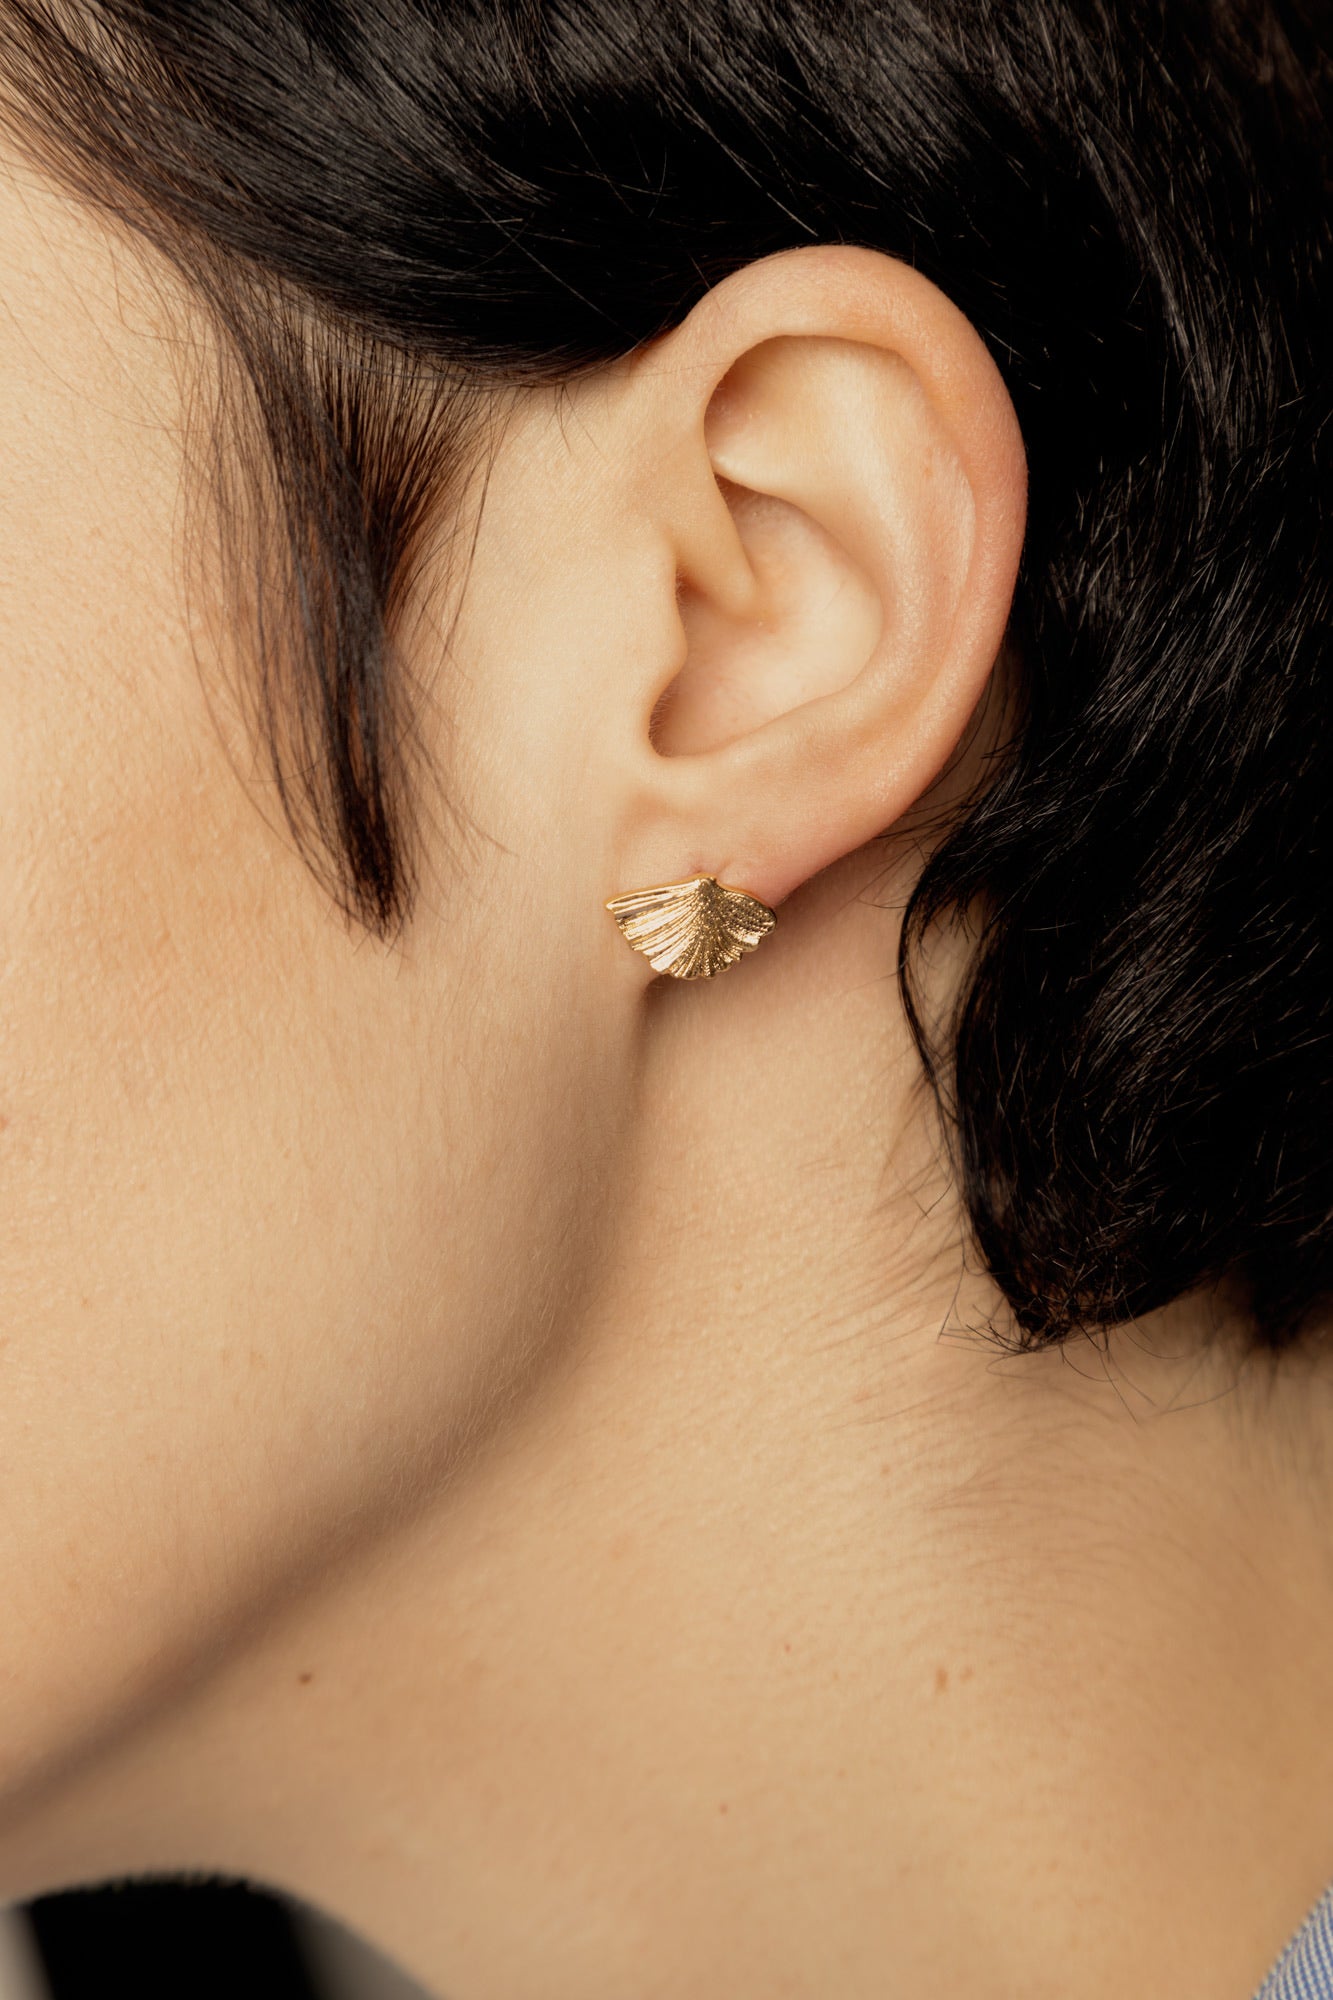 Ginko earrings